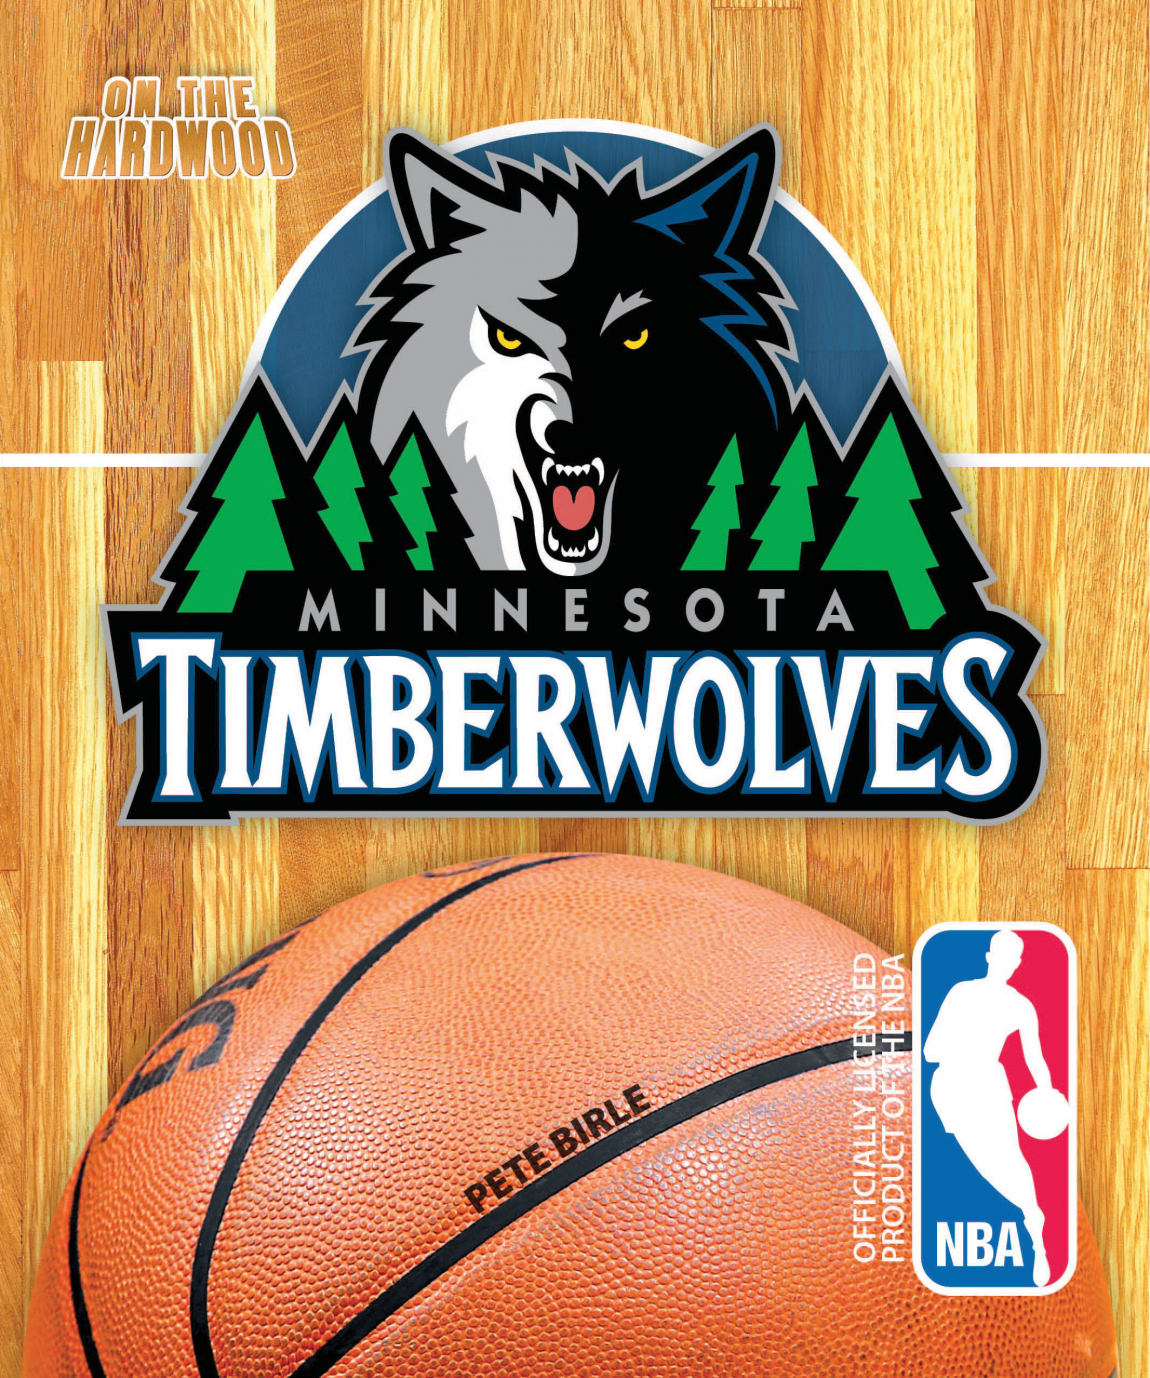 Timberwolves-1.png